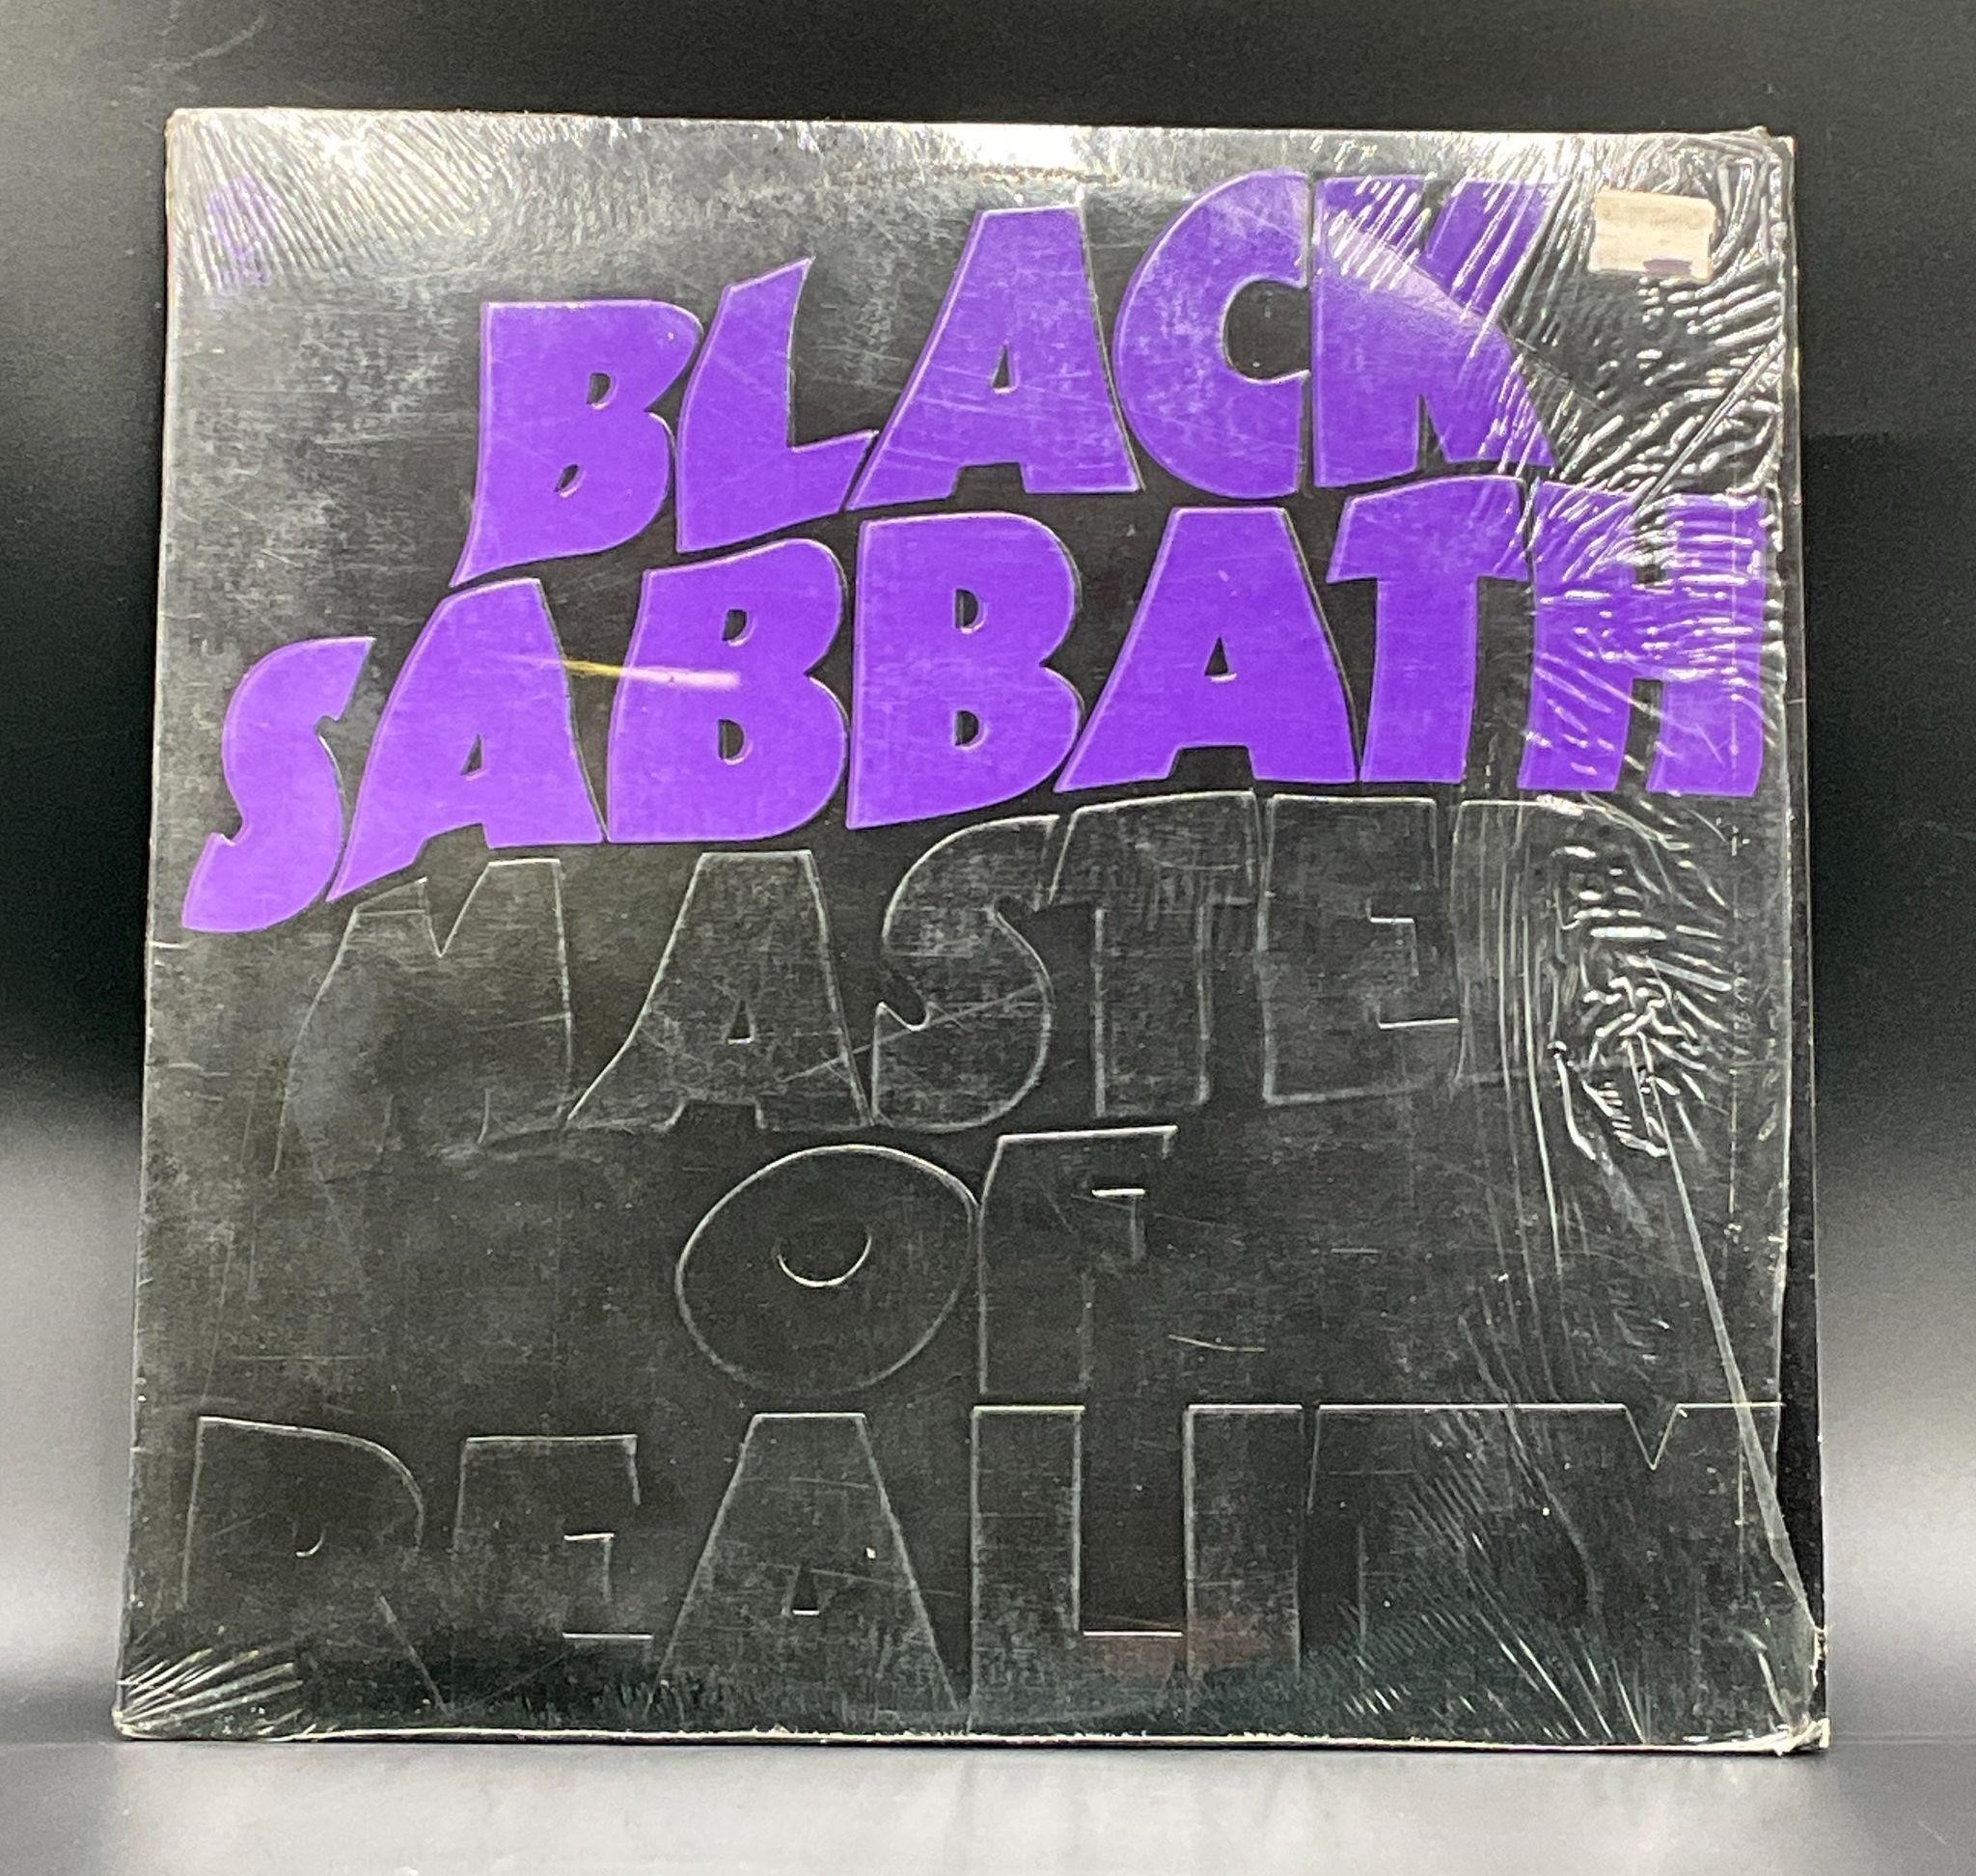 1971 1st OG Black Sabbath "Master of Reality"